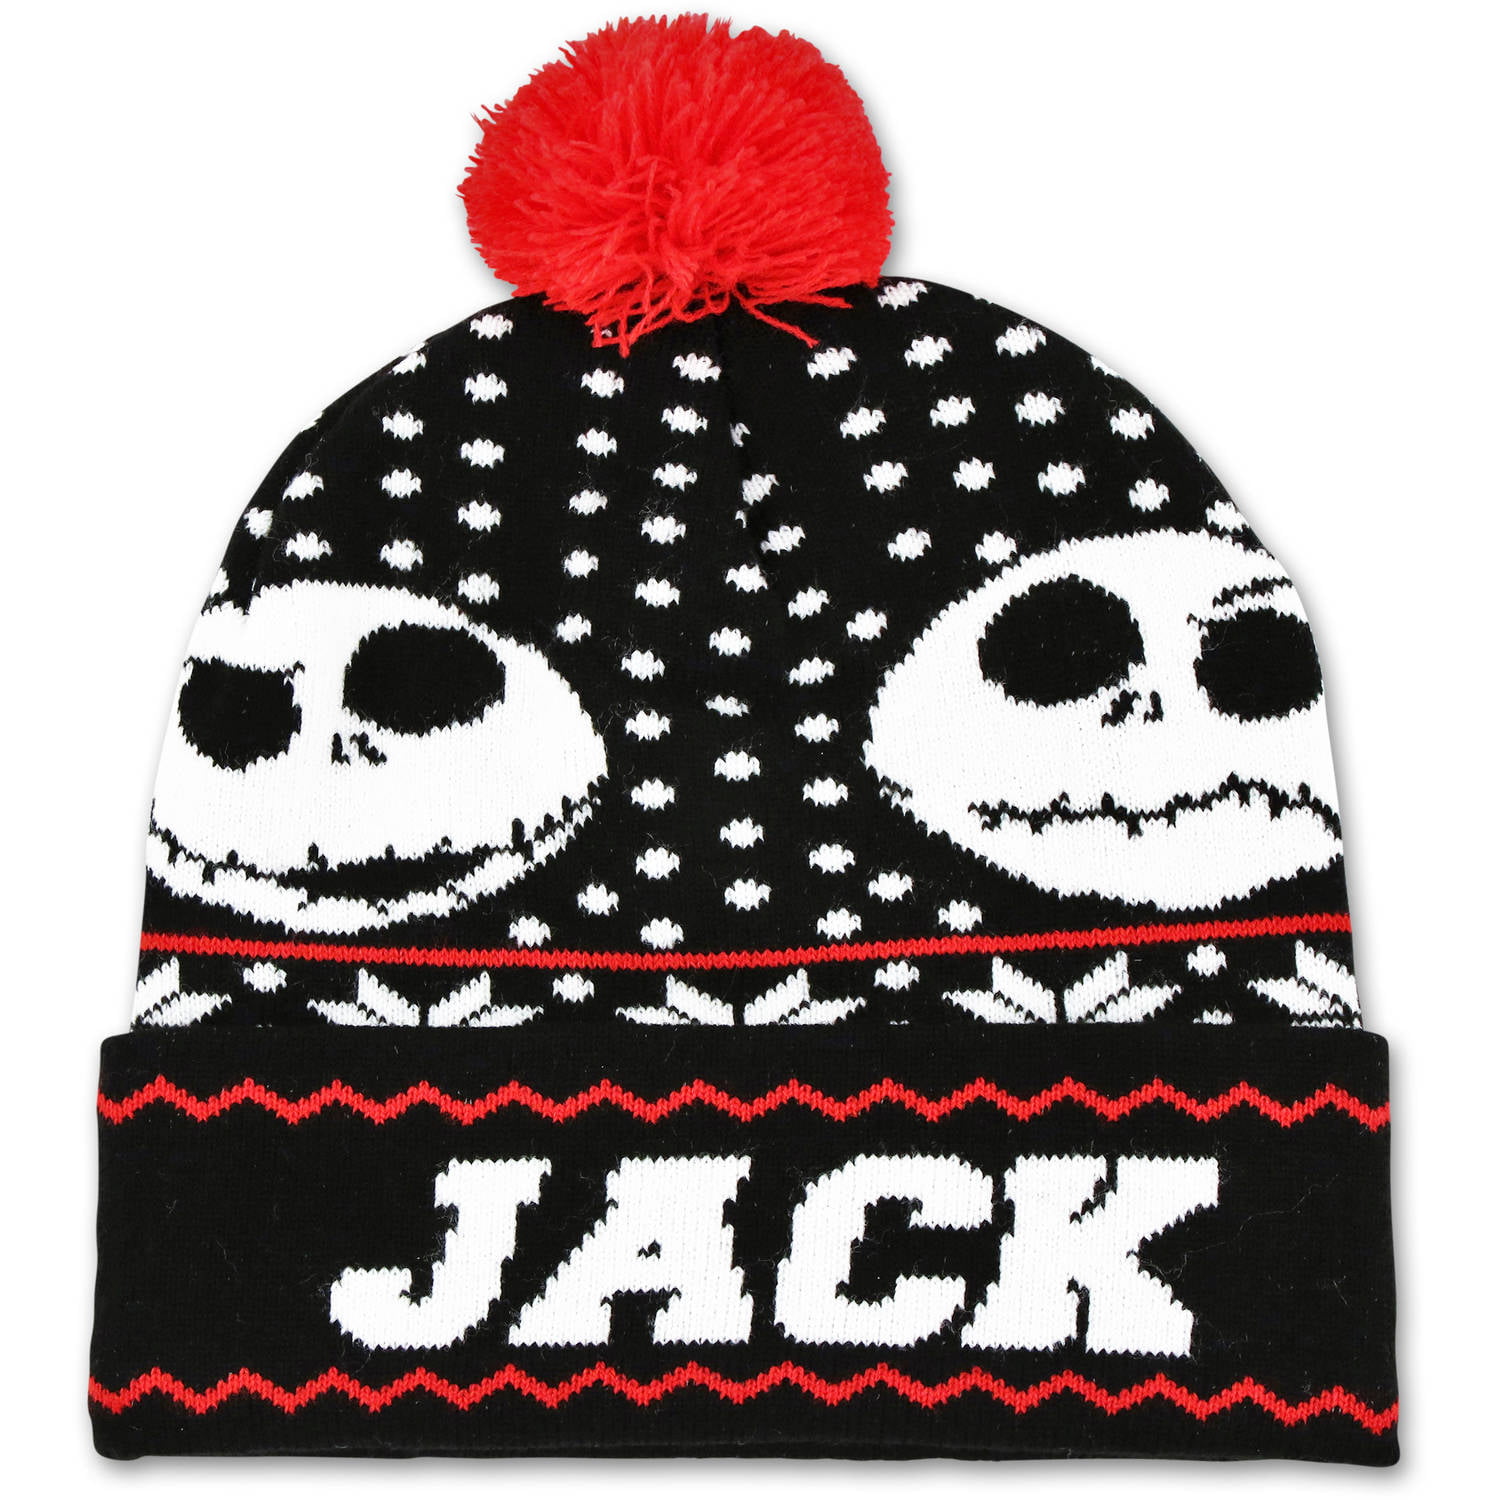 The Nightmare Before Christmas Jack Skellington Fair Isle Knit Hat Black